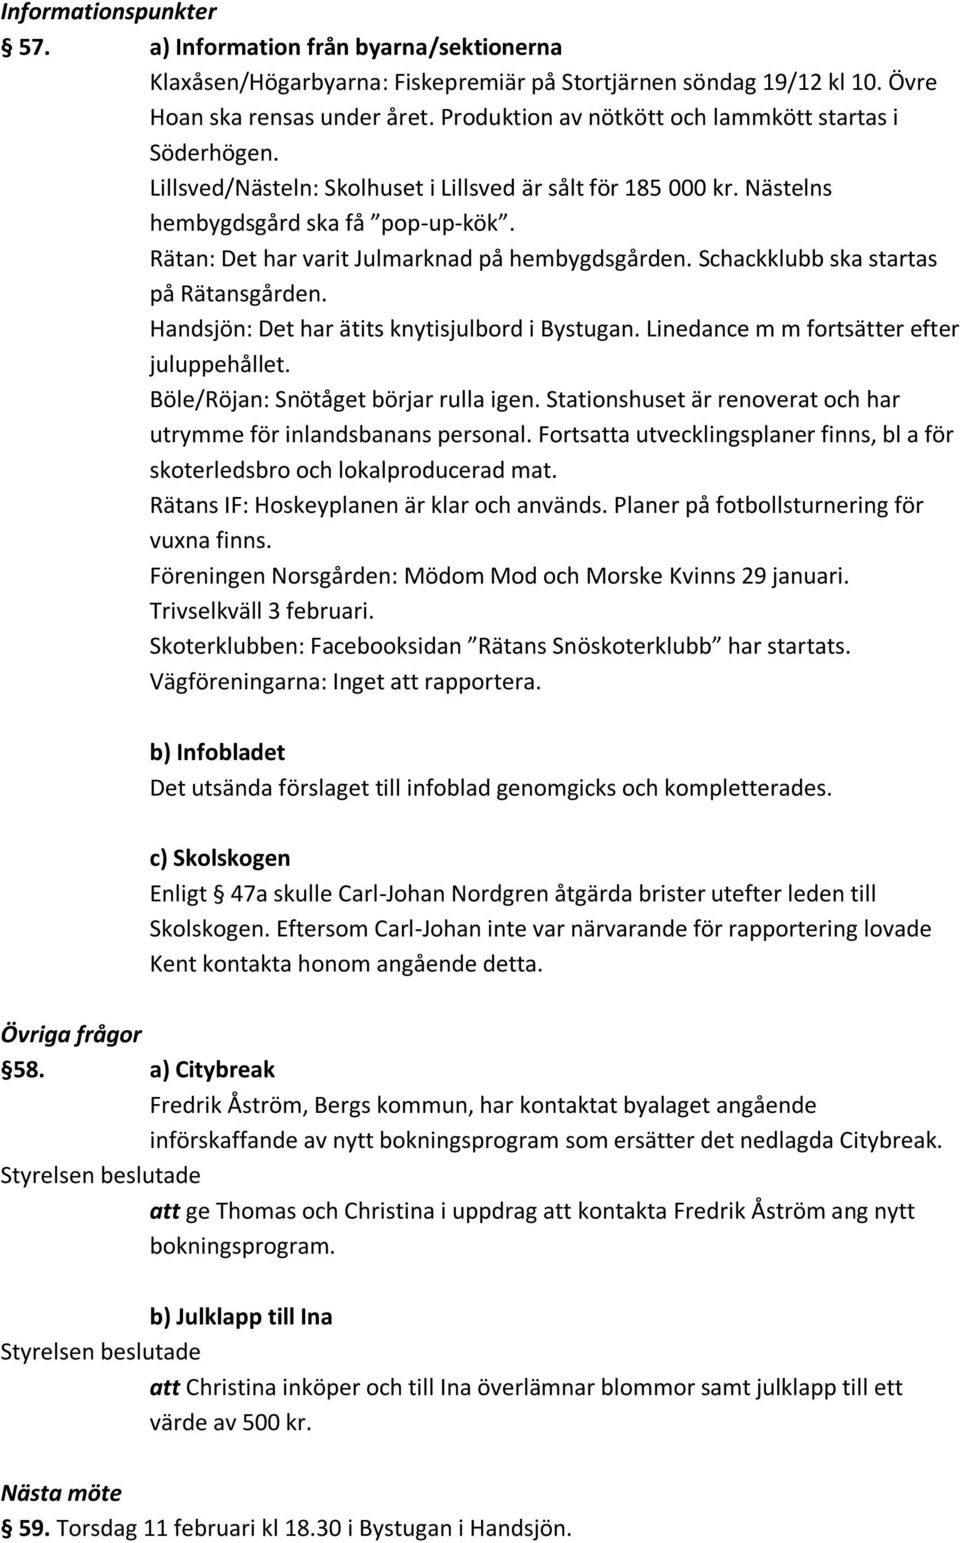 Rätan: Det har varit Julmarknad på hembygdsgården. Schackklubb ska startas på Rätansgården. Handsjön: Det har ätits knytisjulbord i Bystugan. Linedance m m fortsätter efter juluppehållet.